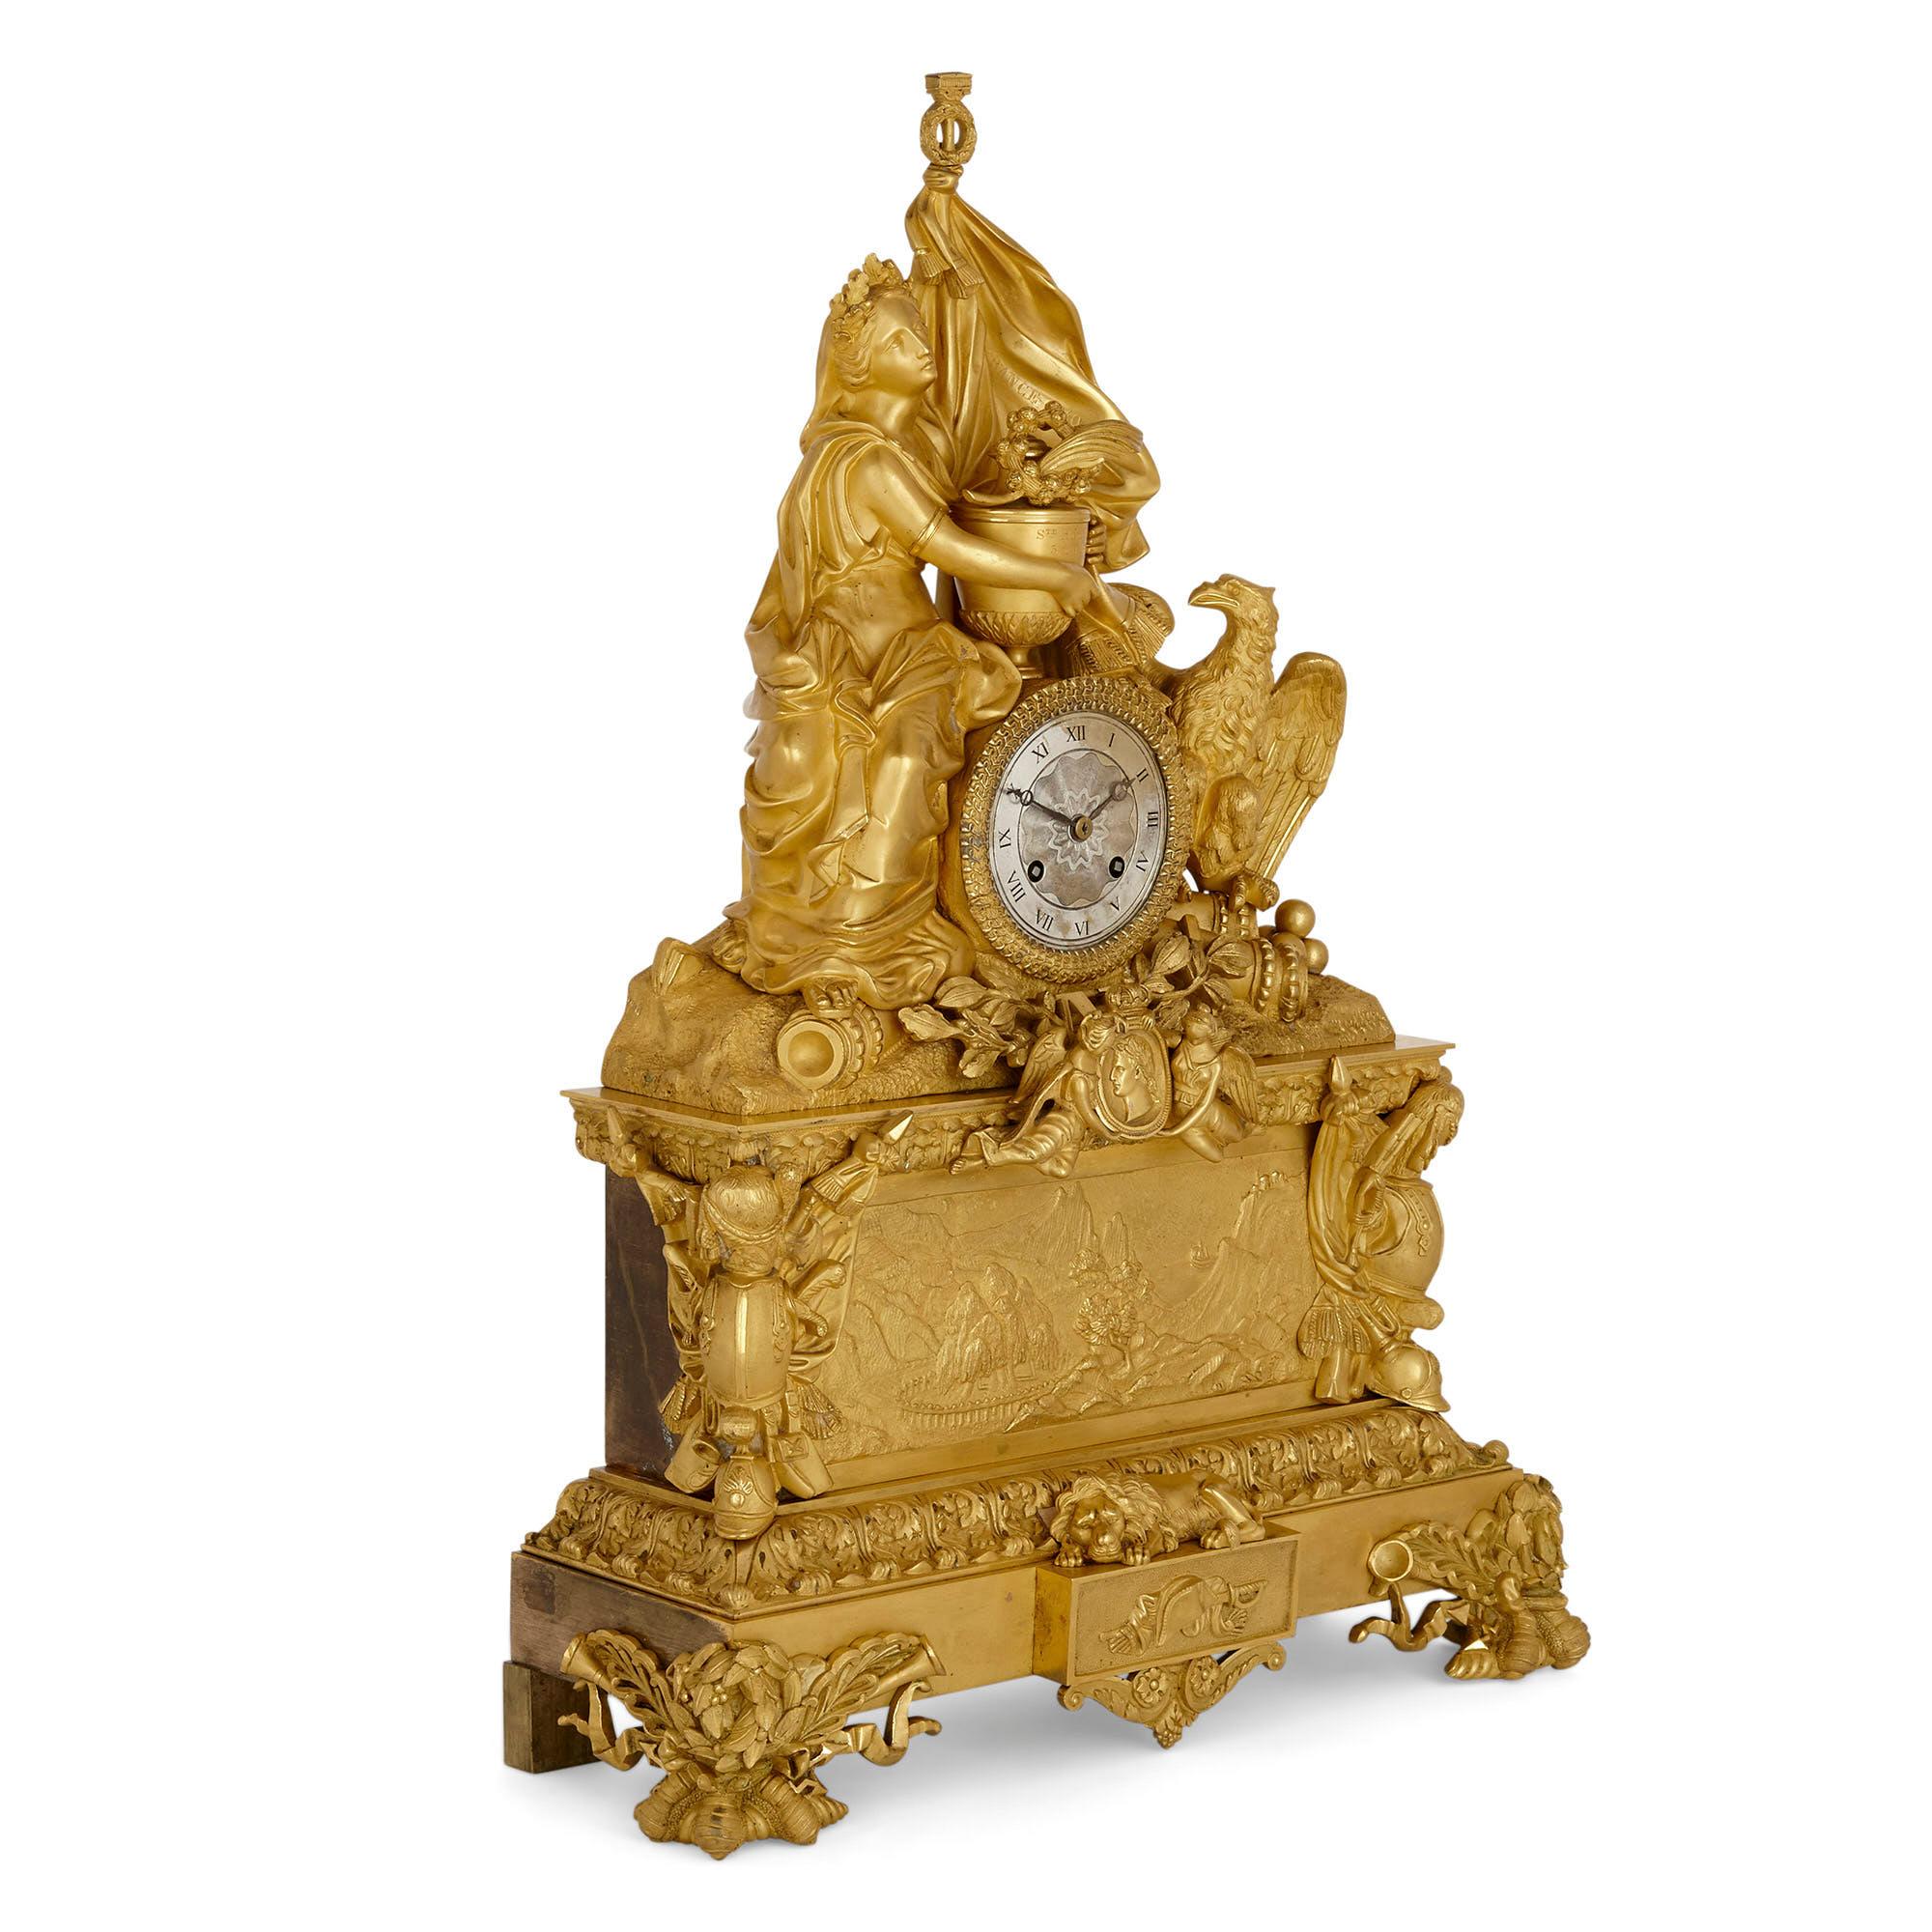 Grande pendule de cheminée en bronze doré commémorant Napoléon
Français, vers 1840
Mesures : Hauteur 57cm, largeur 40cm, profondeur 15cm

La pendule de cheminée en bronze doré est posée sur une base rectangulaire en gradins, dotée de quatre